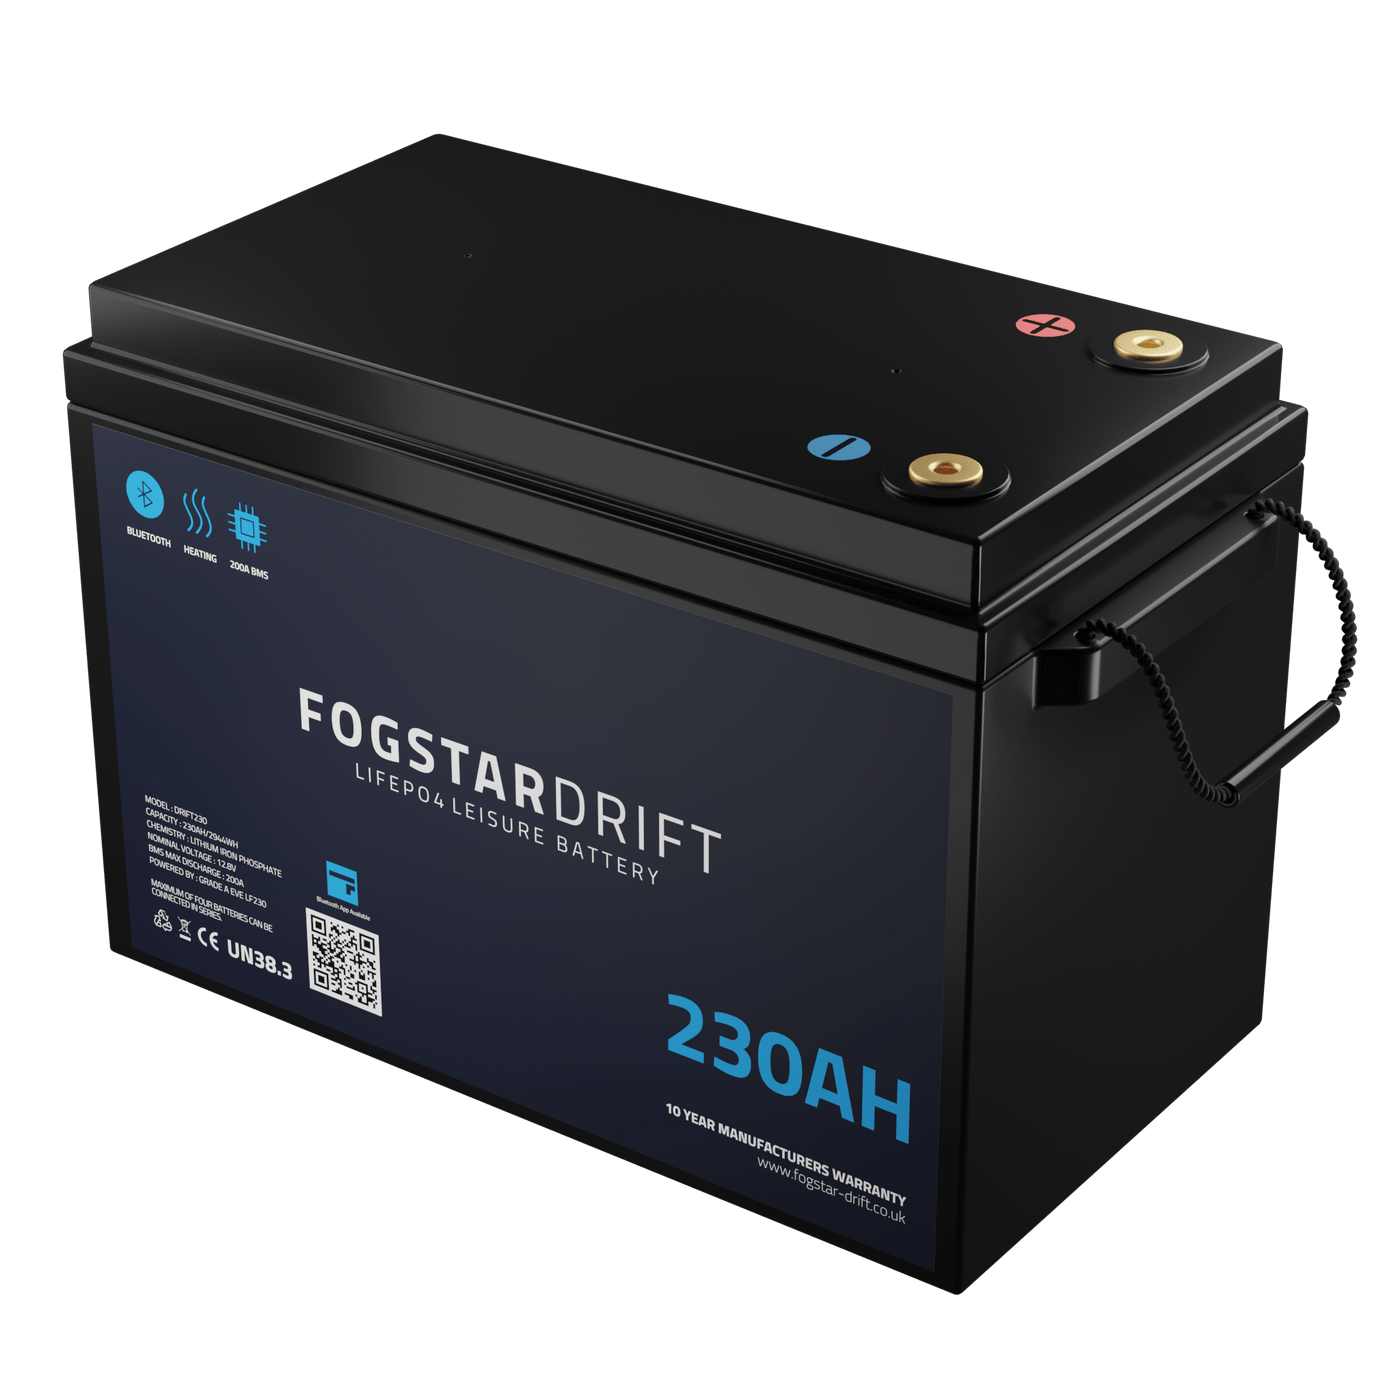 Fogstar Drift 12v 230Ah Lithium Battery